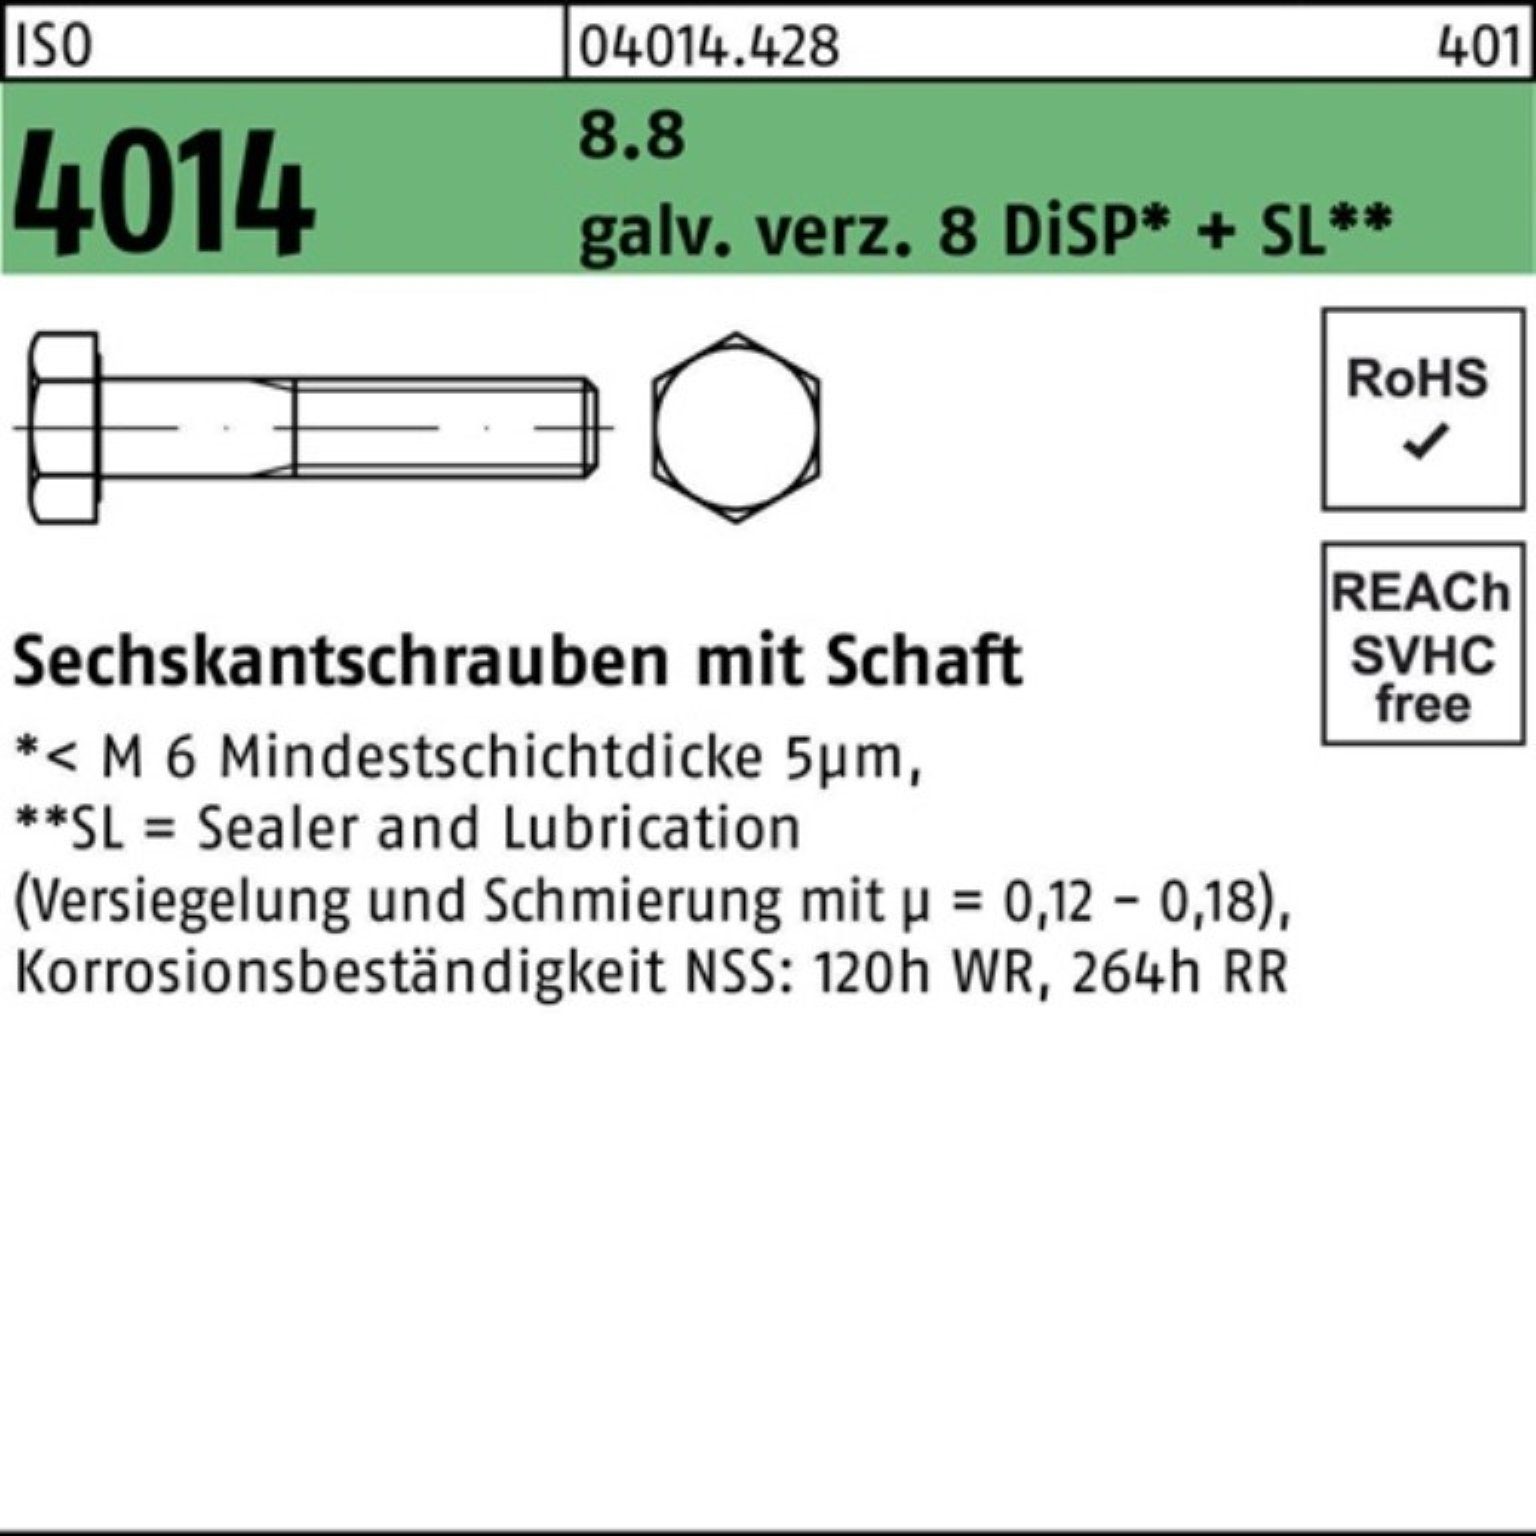 Bufab Sechskantschraube 100er Pack Sechskantschraube ISO 4014 Schaft M20x230 8.8 galv.verz. 8